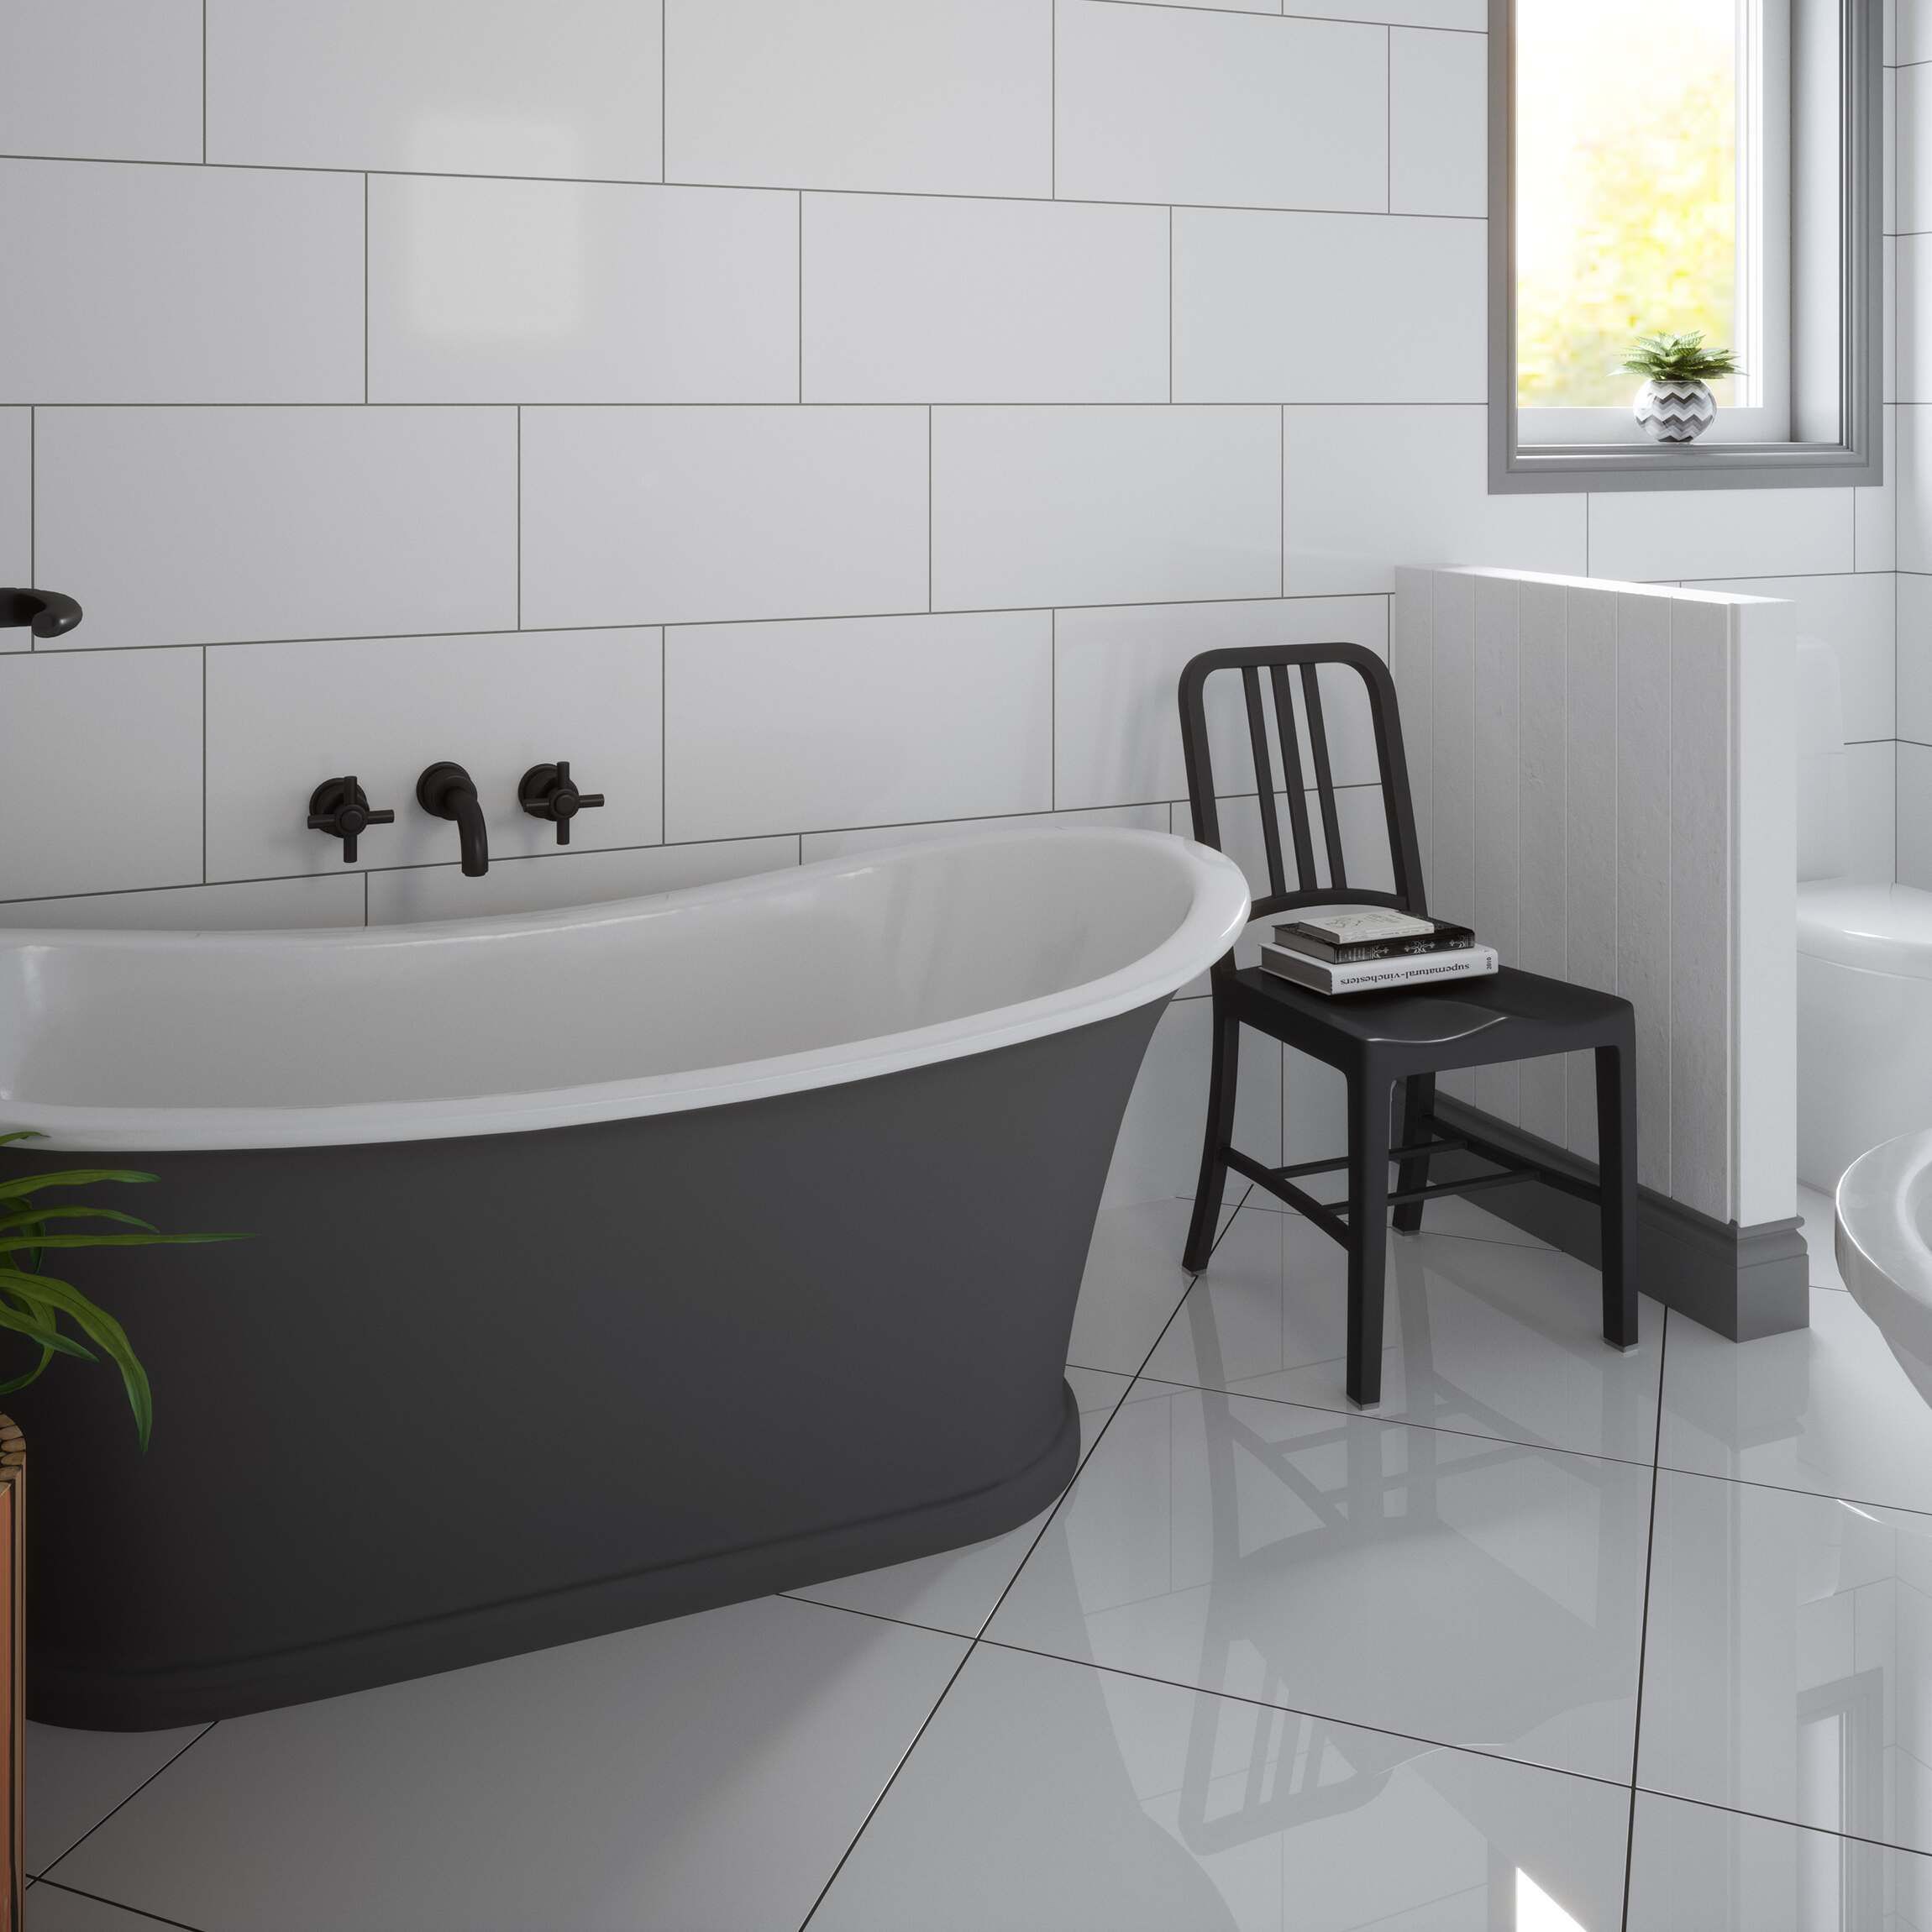 Extreme White Polished Porcelain Floor, Porcelain Or Ceramic Tiles For Bathroom